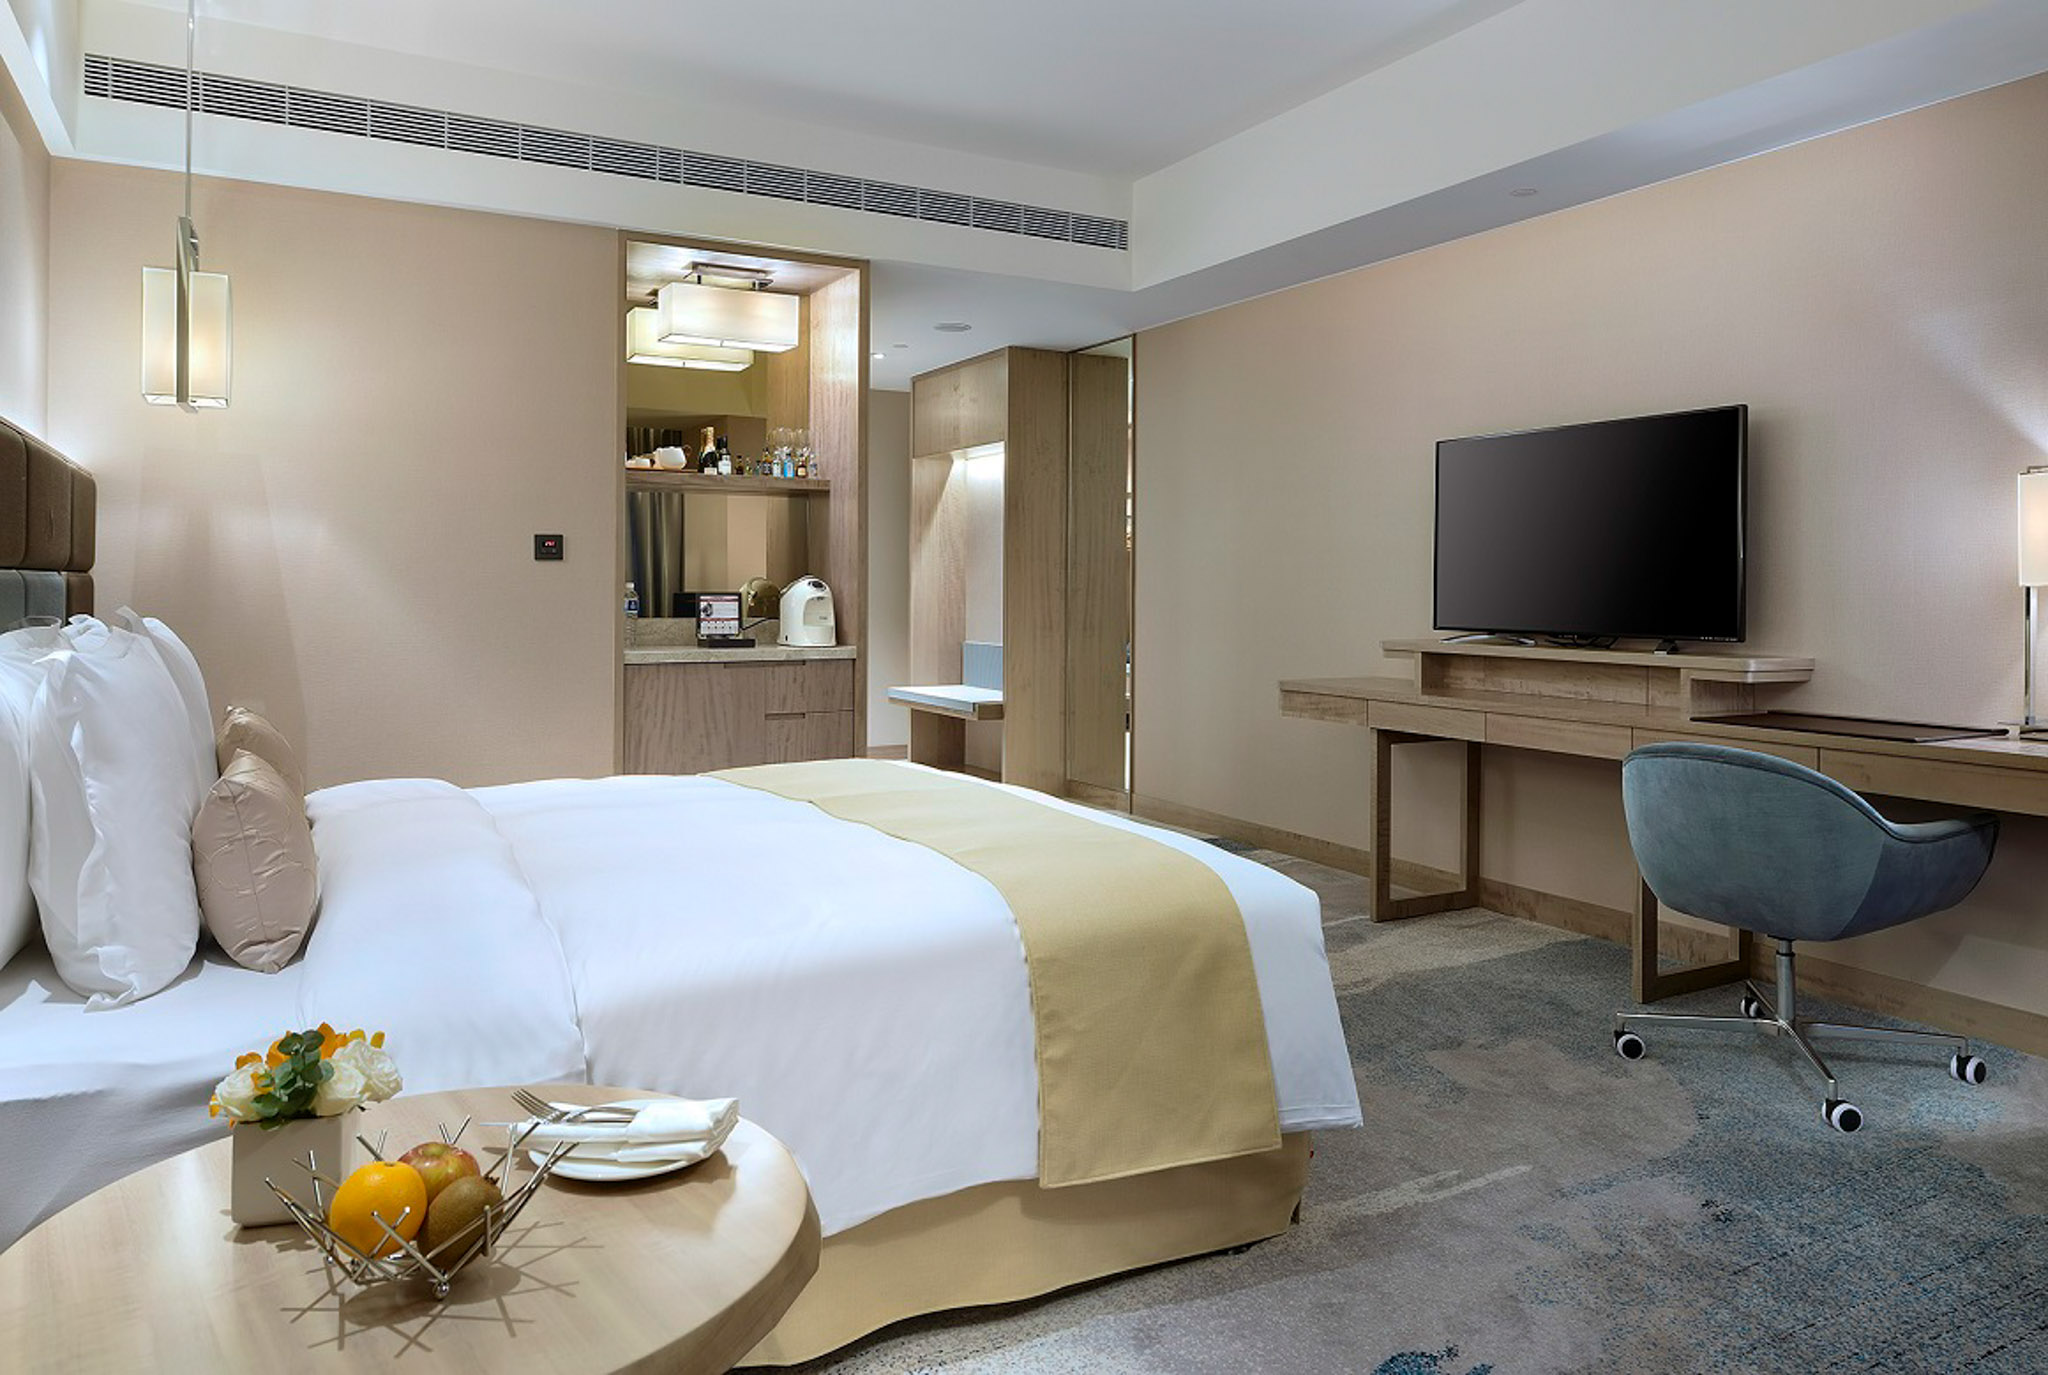 板橋凱撒大飯店推出「金兔迎春」新春住房專案，入住送美味自助早餐、享27樓行政酒廊VIP禮遇及新年好手氣組。